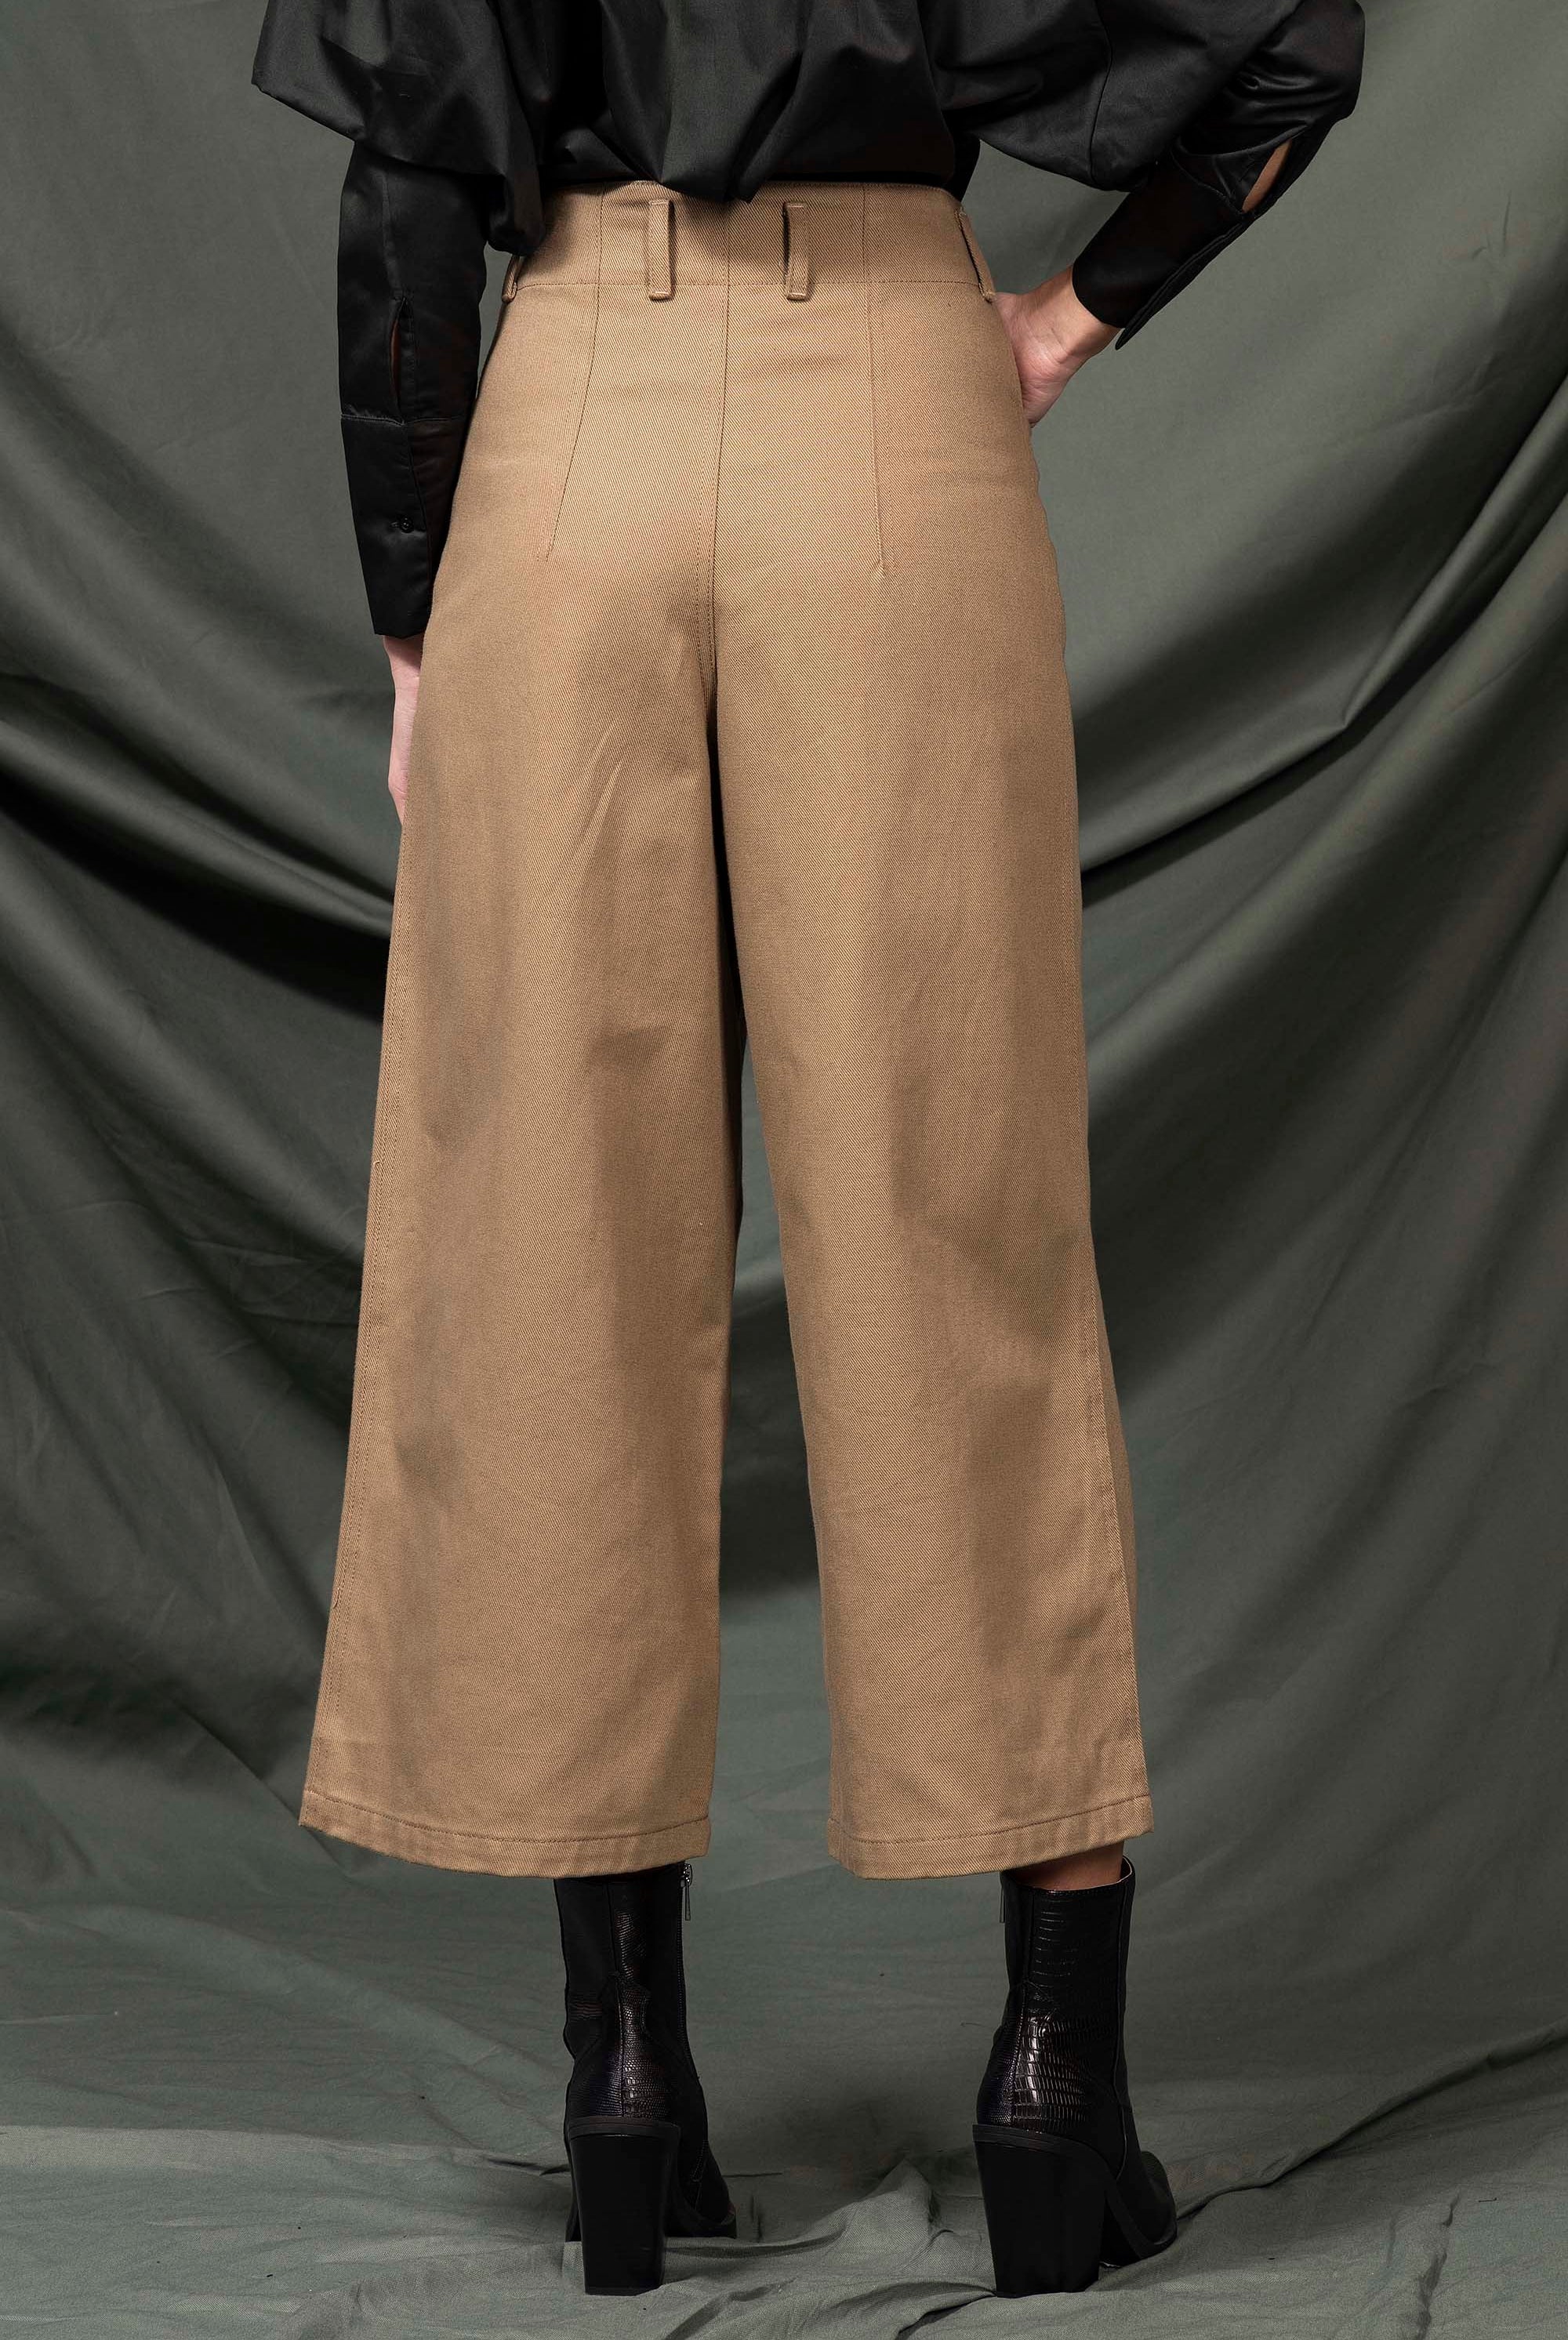 Pantalon Margarita Marron Clair minimalisme et détails tendance, coupes classiques et une palette de couleurs neutres